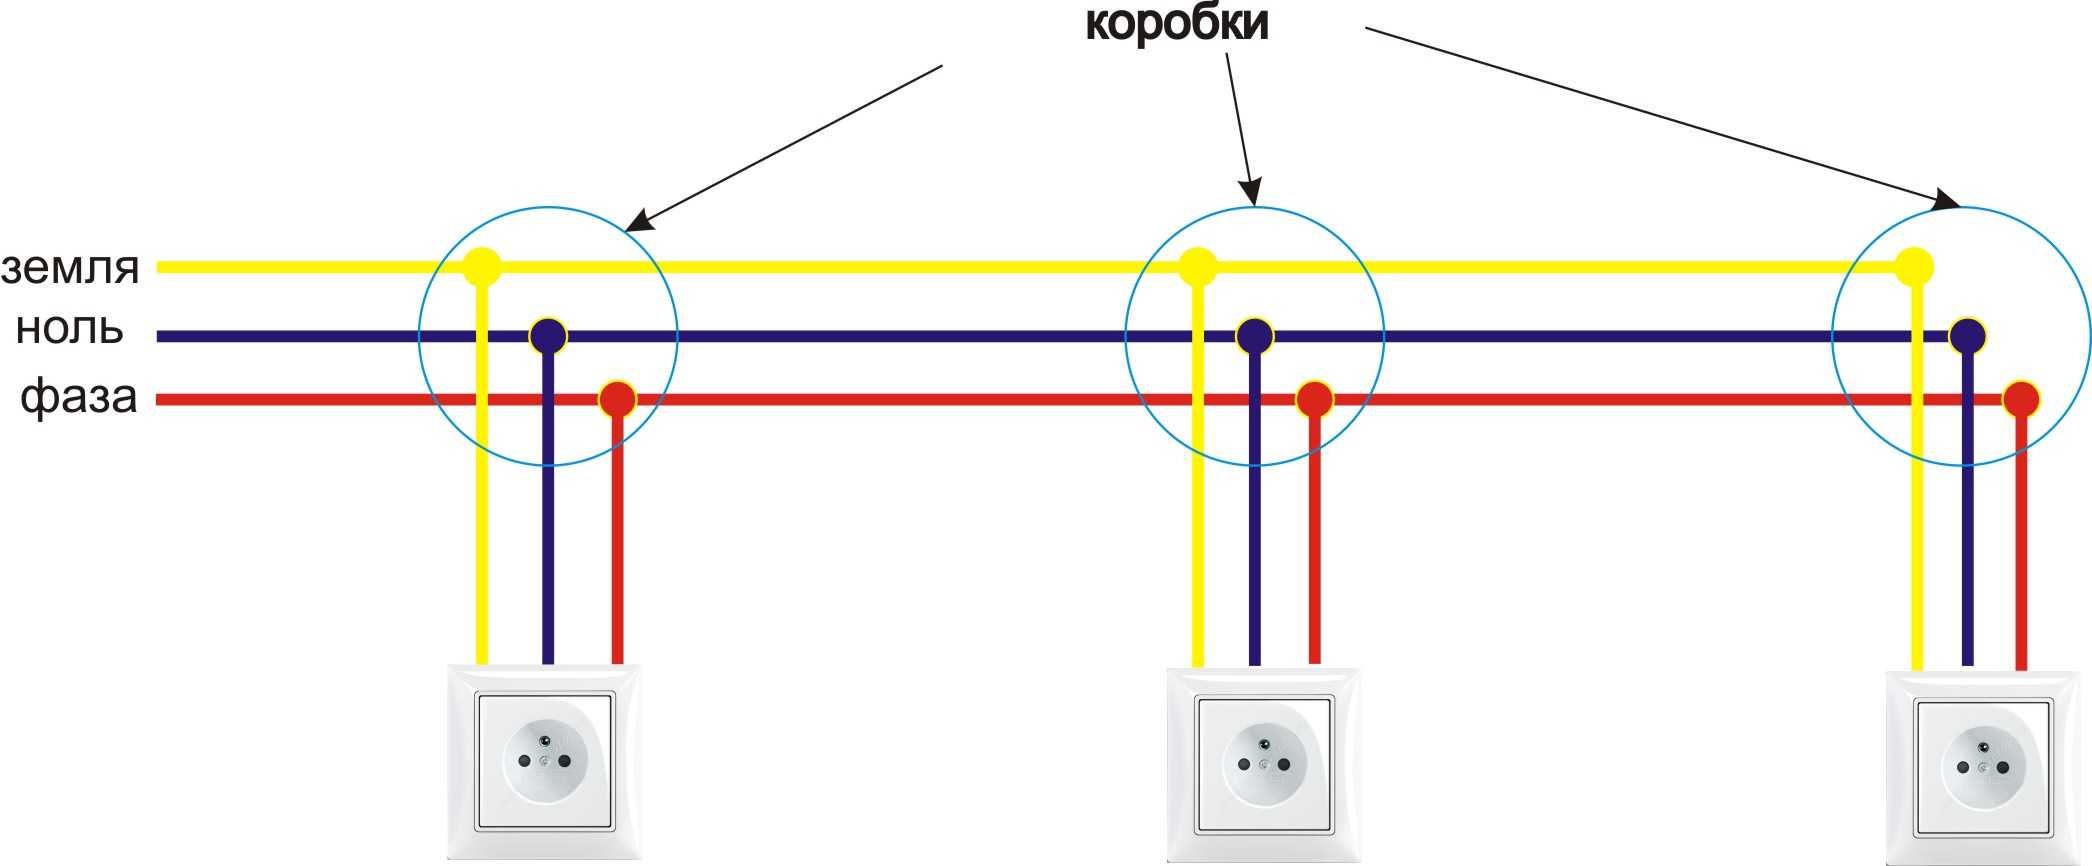 Как определить фазу и ноль в электропроводке